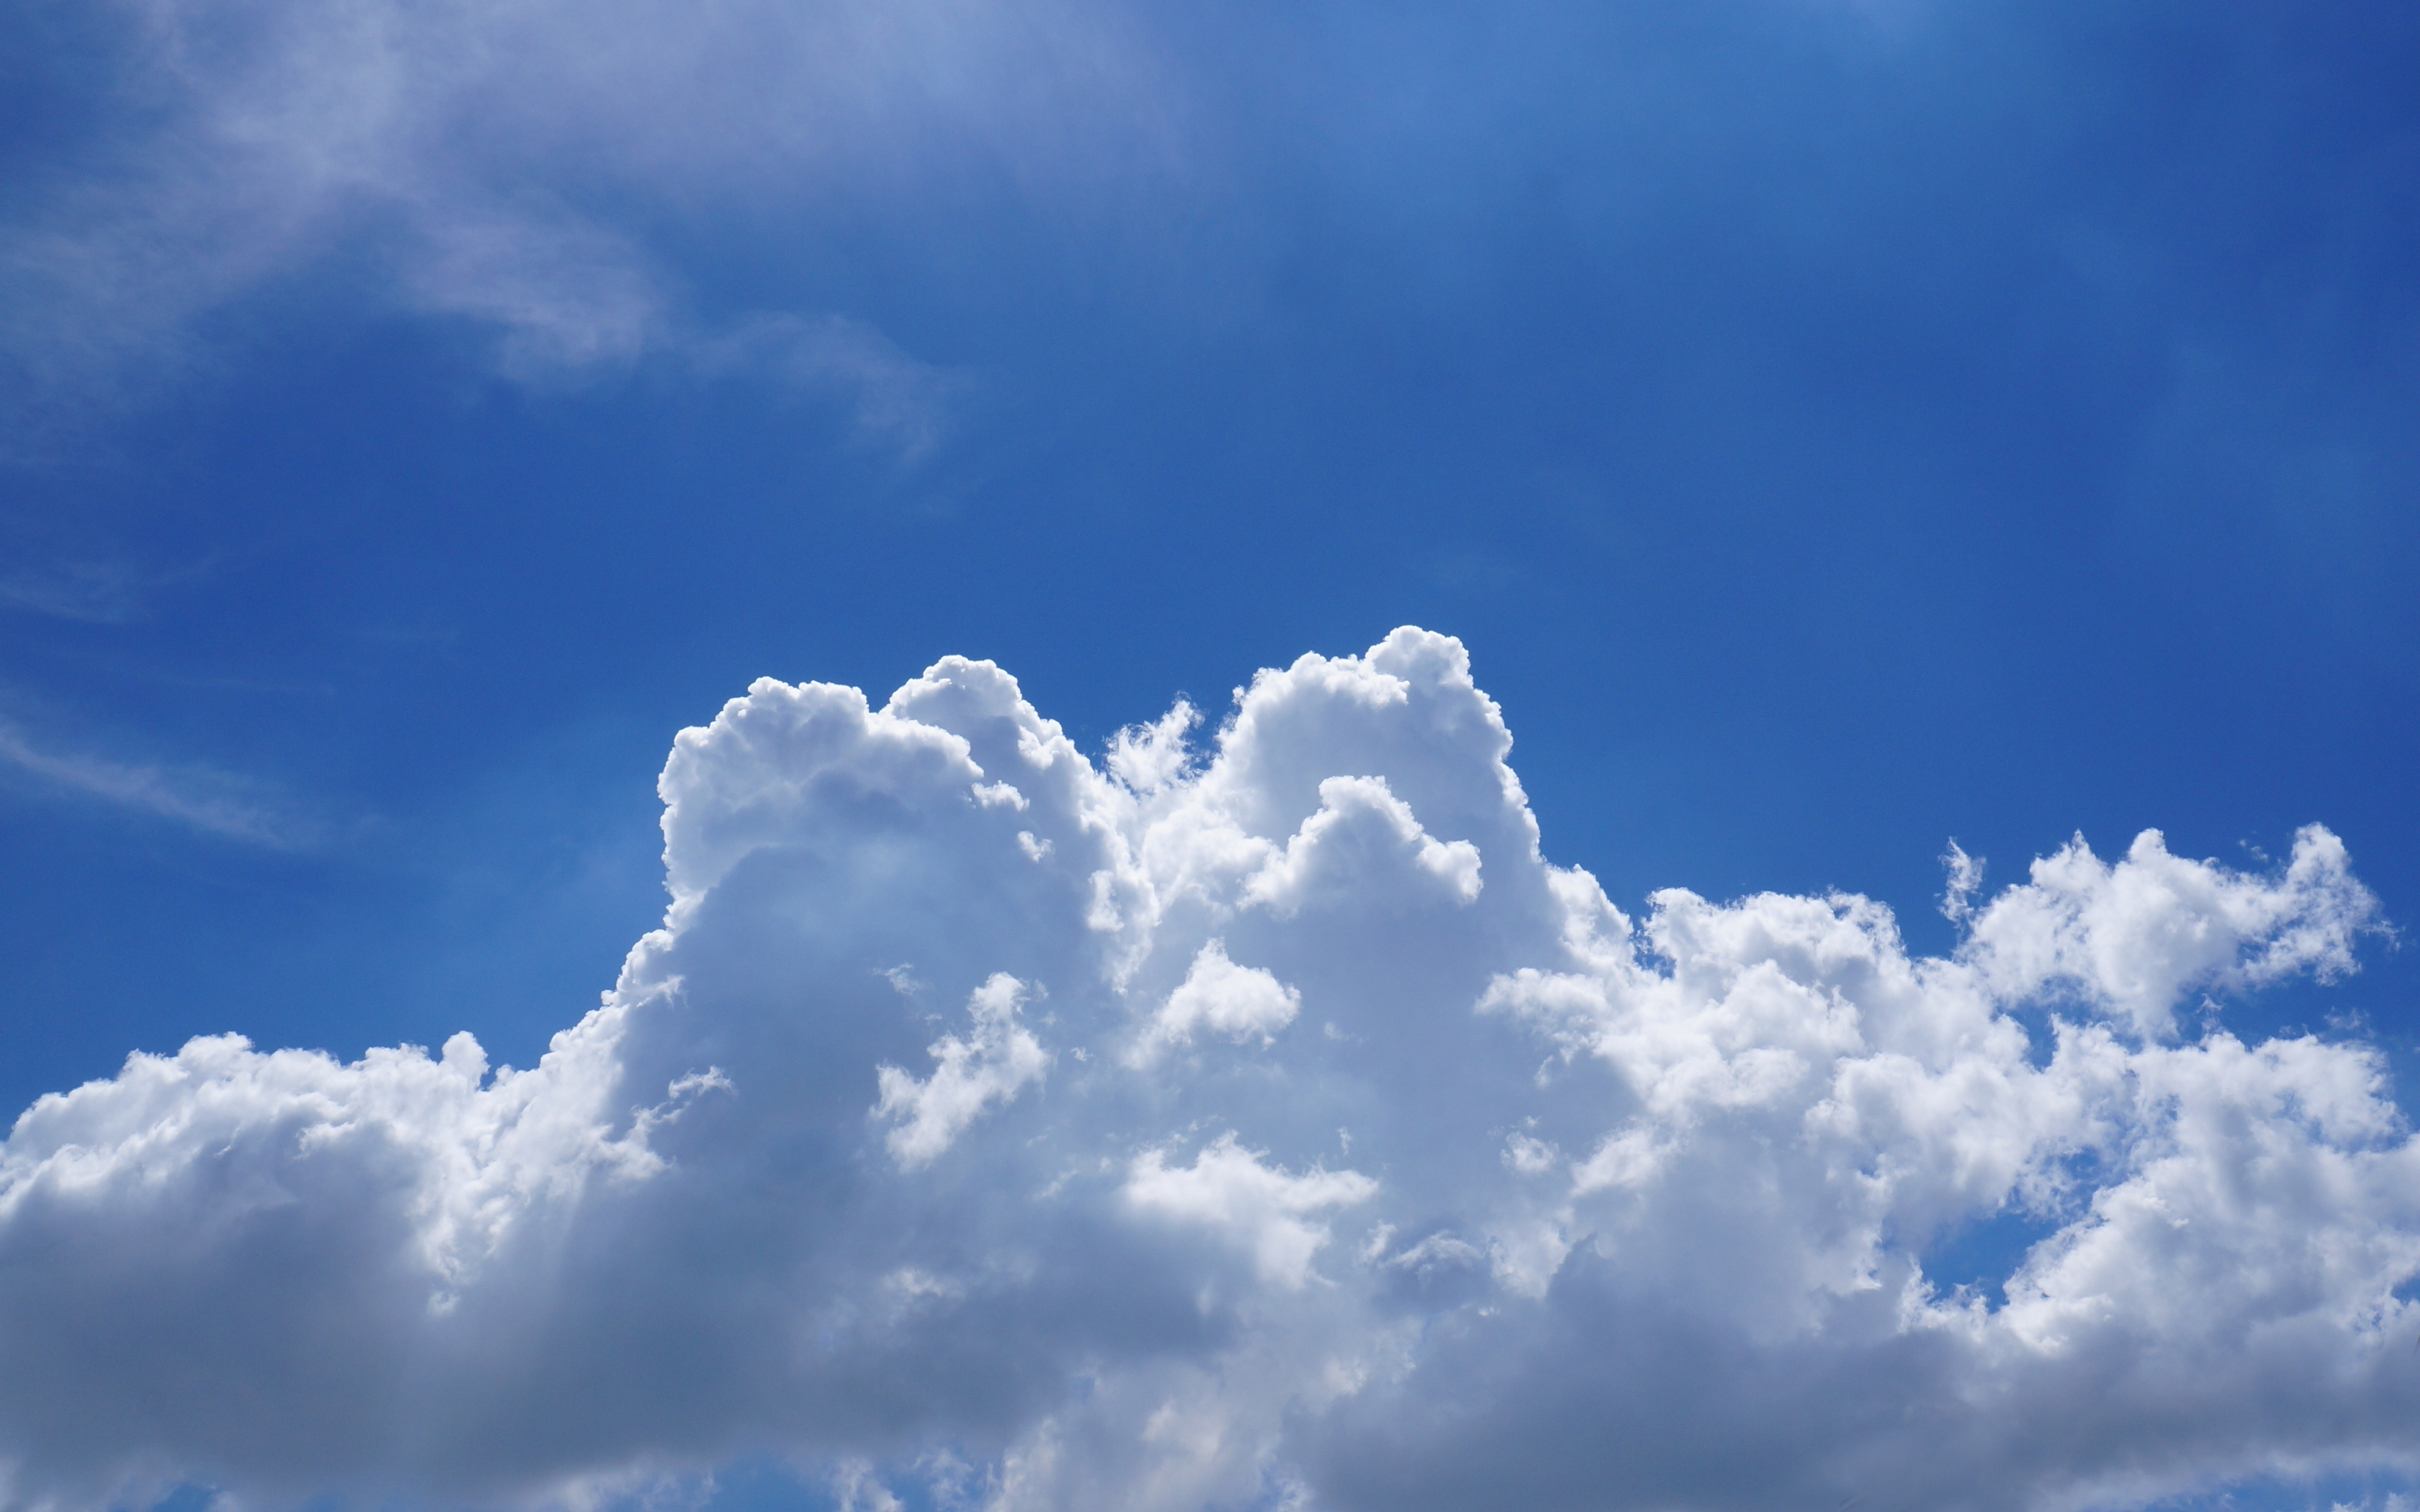 sky clouds wallpaper hd,sky,cloud,cumulus,daytime,blue